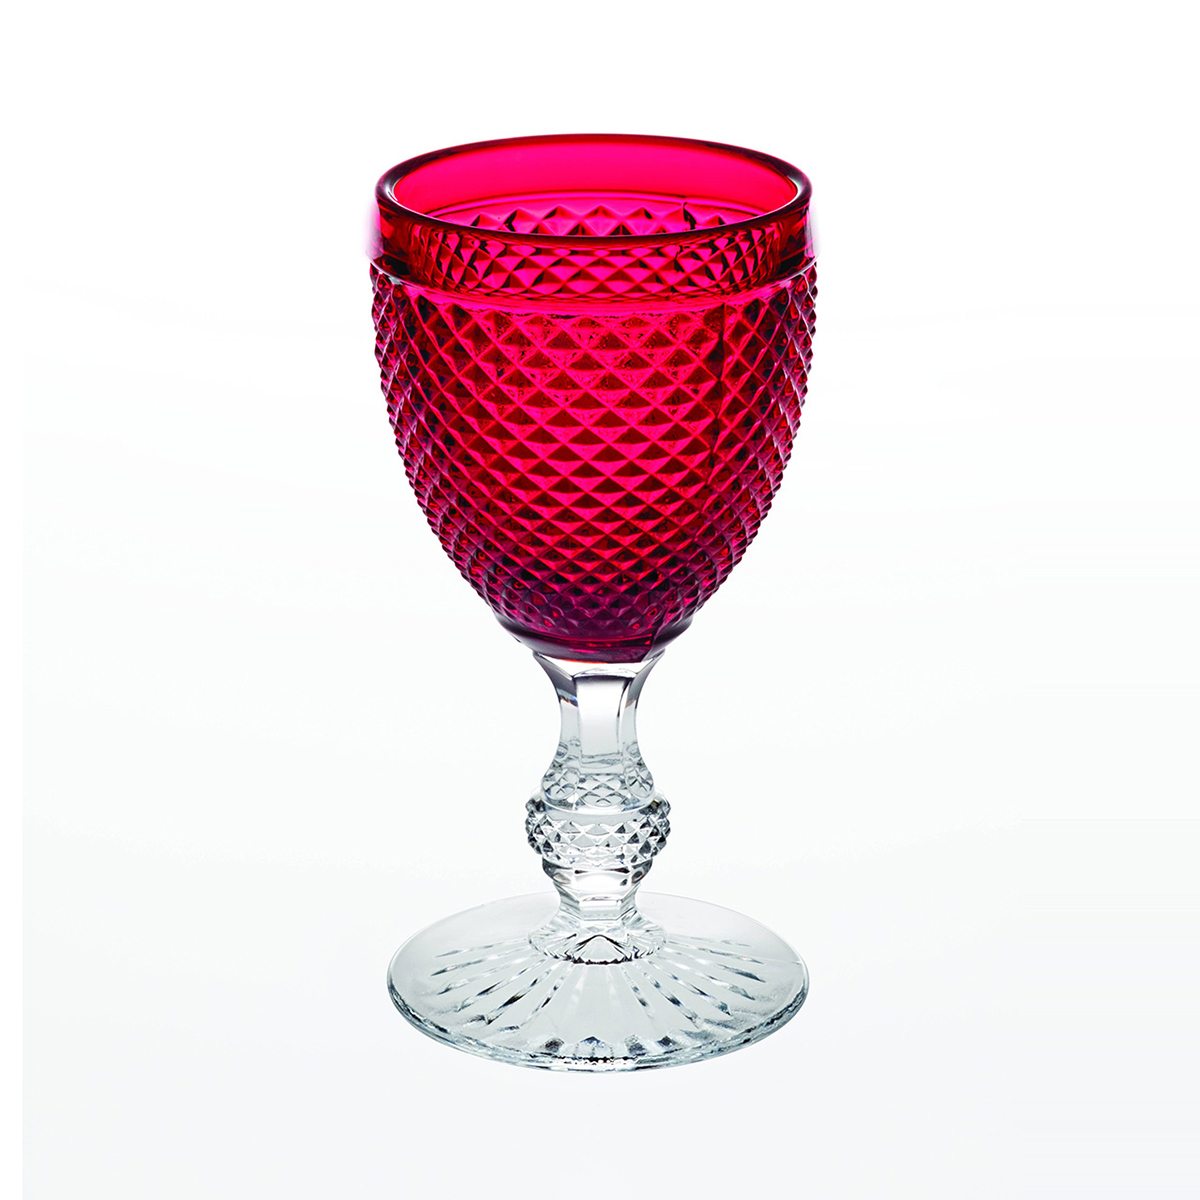 Vista Alegre Glass Bicos Bicolor Goblet with Red Top